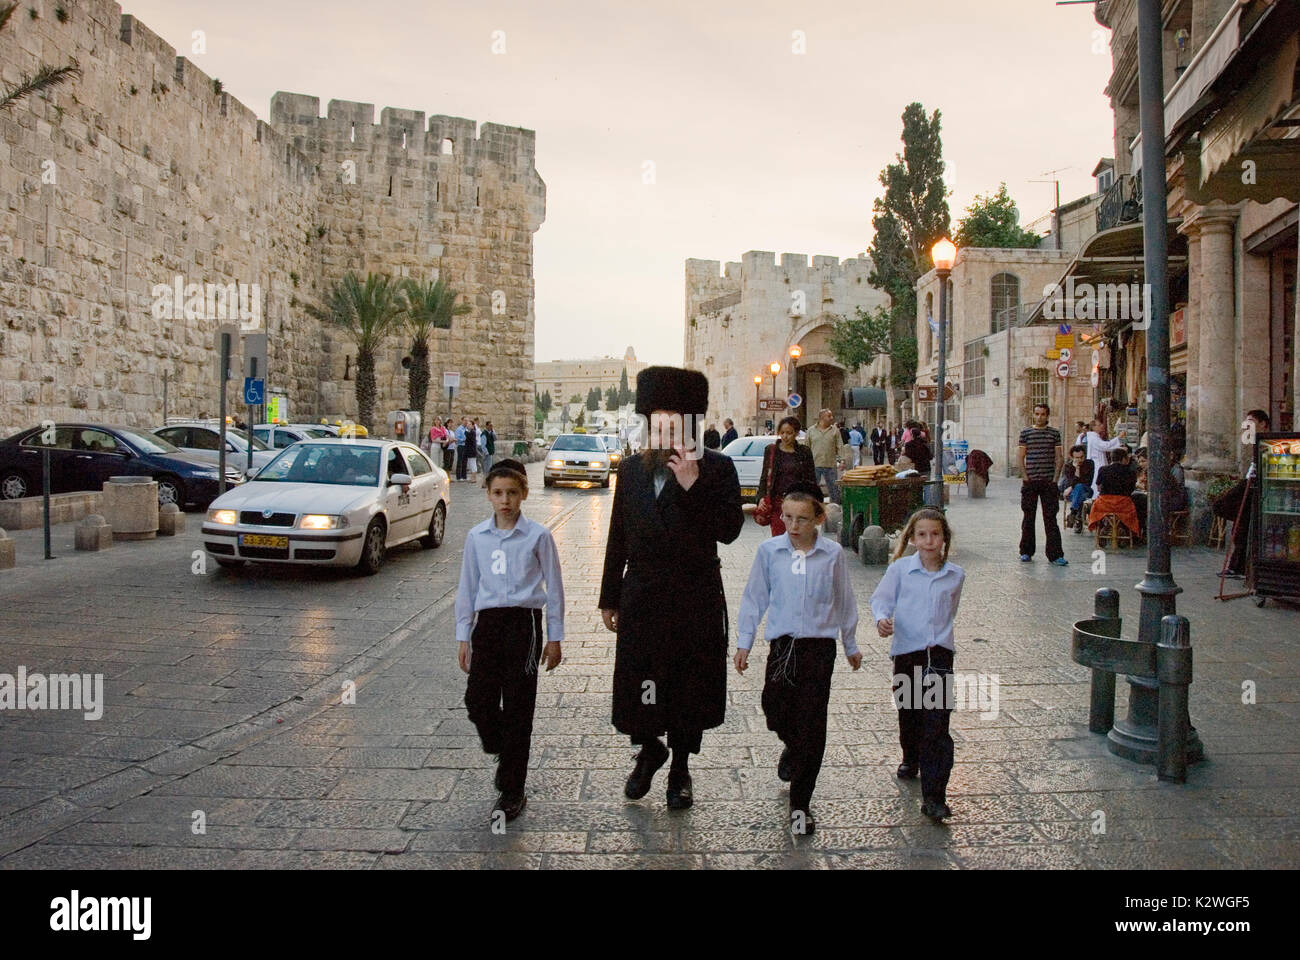 Une famille juive près de la porte de Jaffa, l'entrée à l'extrémité ouest de la vieille ville de Jérusalem. Israël Banque D'Images